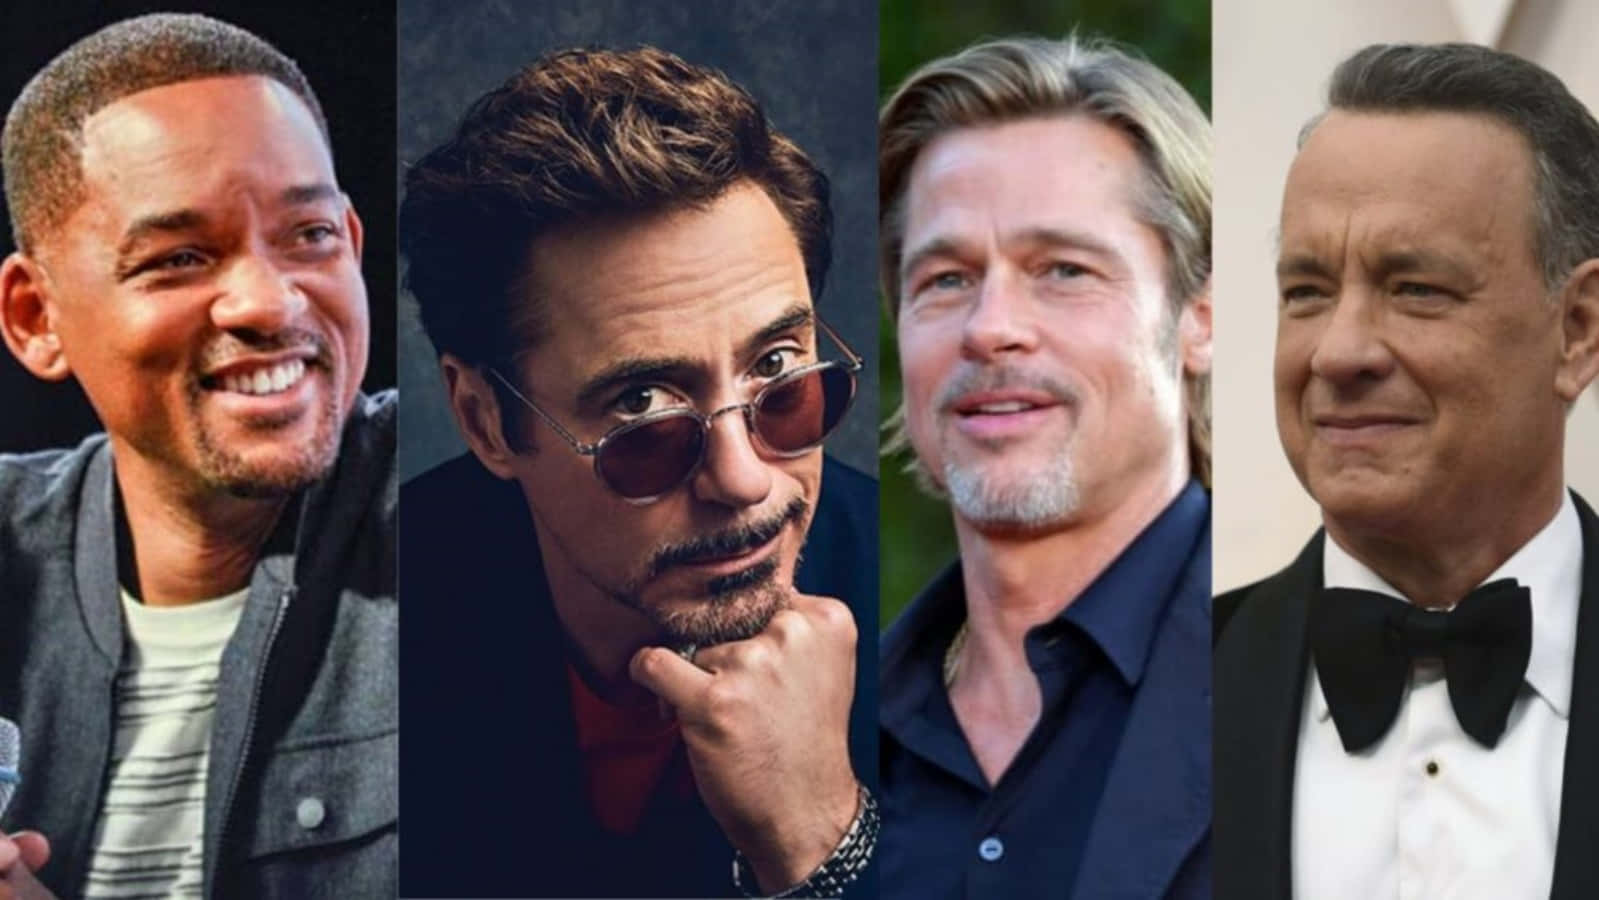 Lasestrellas De Hollywood Emily Blunt, Ryan Gosling Y Chris Pine Son Apreciados Por Sus Icónicos Roles.